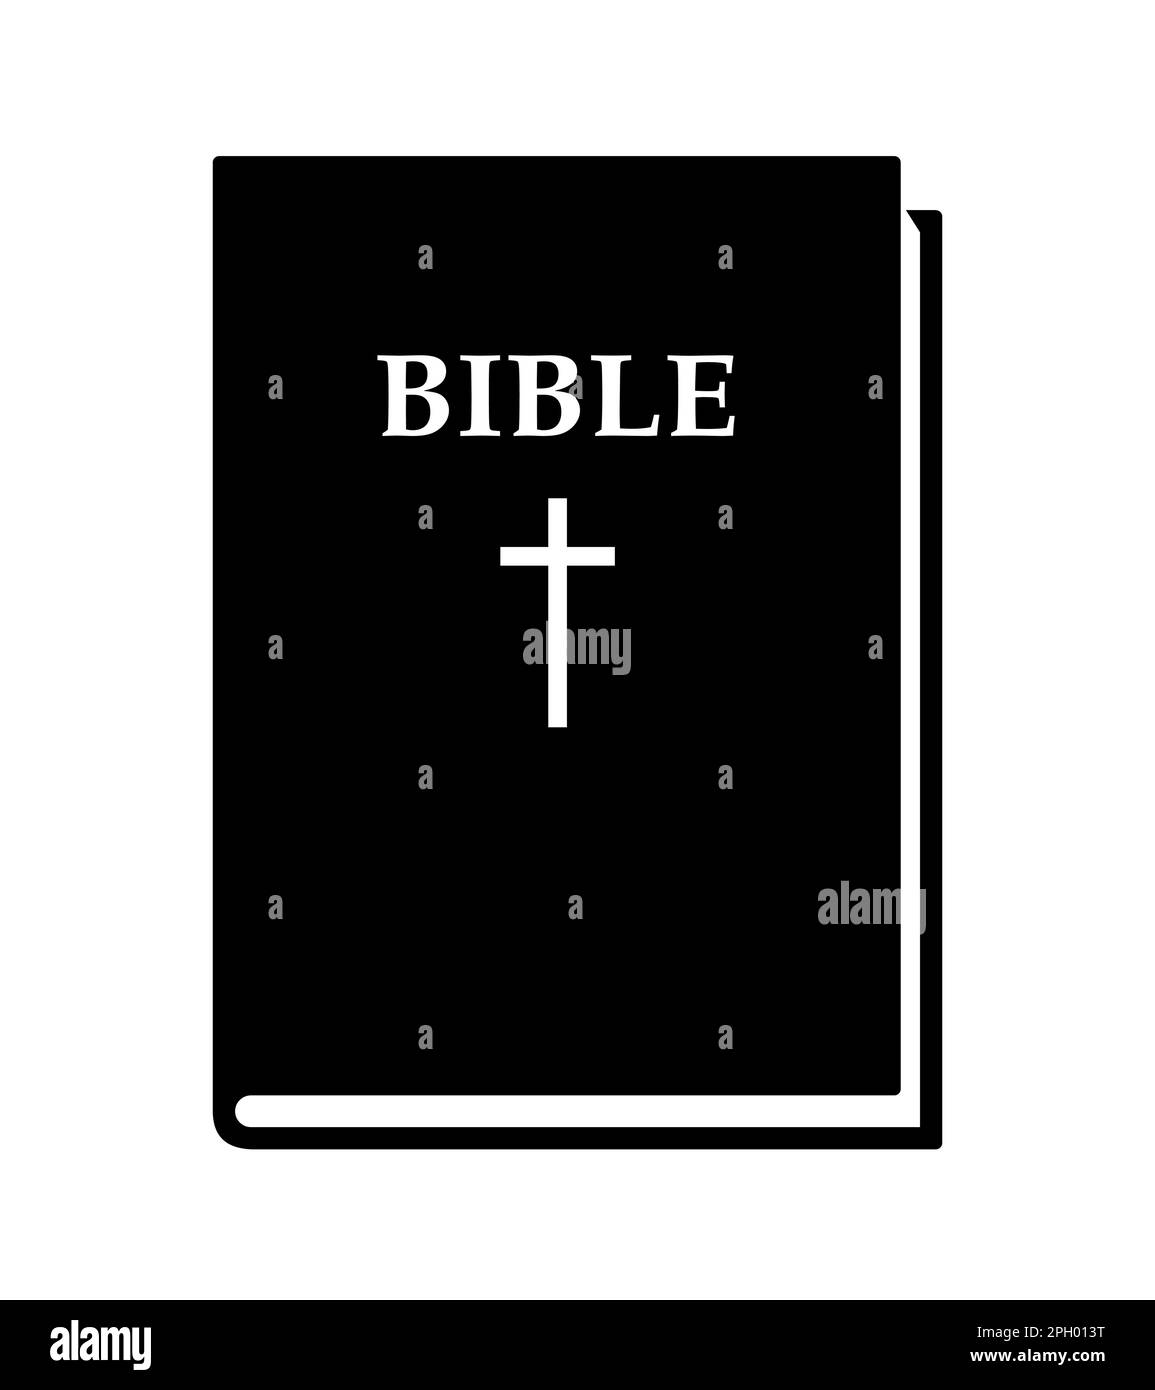 Sainte bible - illustration de vecteur de livre fermé noir et blanc isolée sur blanc Illustration de Vecteur